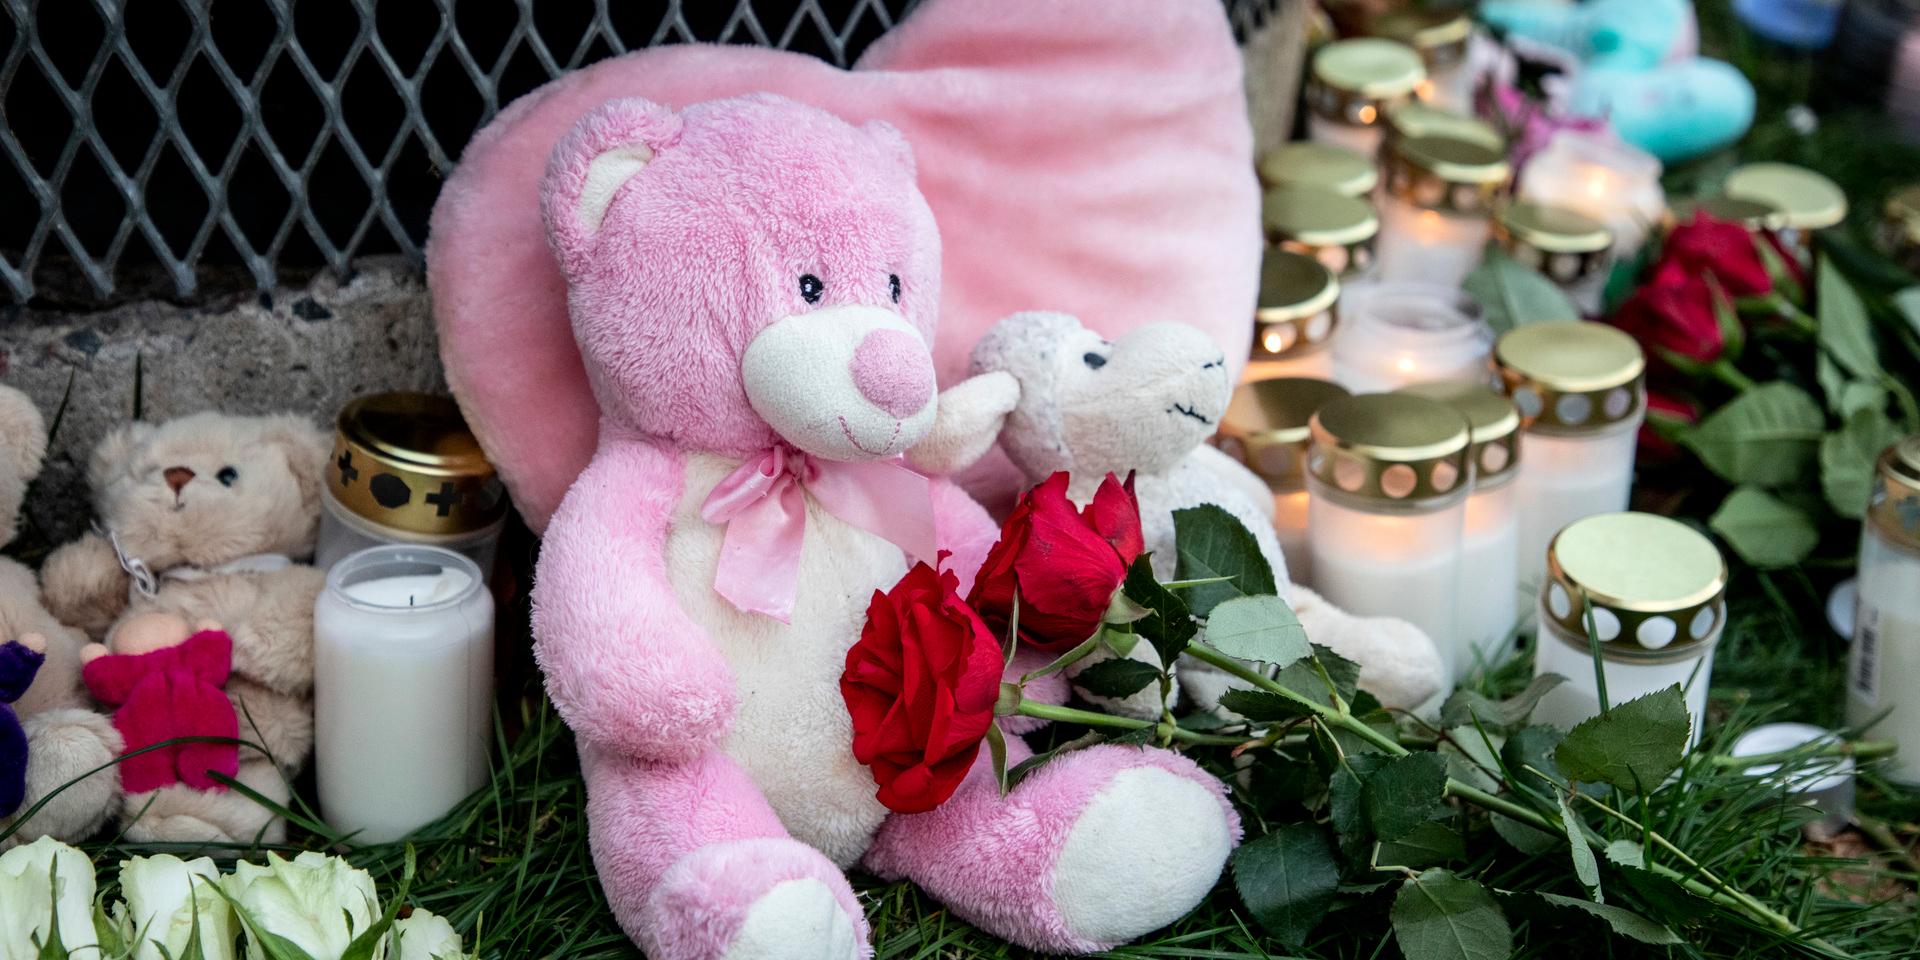 I november dödades en treårig pojke och en sjuårig flicka skadades svårt i Hässelby i nordvästra Stockholm. Under måndagen inleds rättegången mot deras pappa för mord och försök till mord vid Solna tingsrätt. 